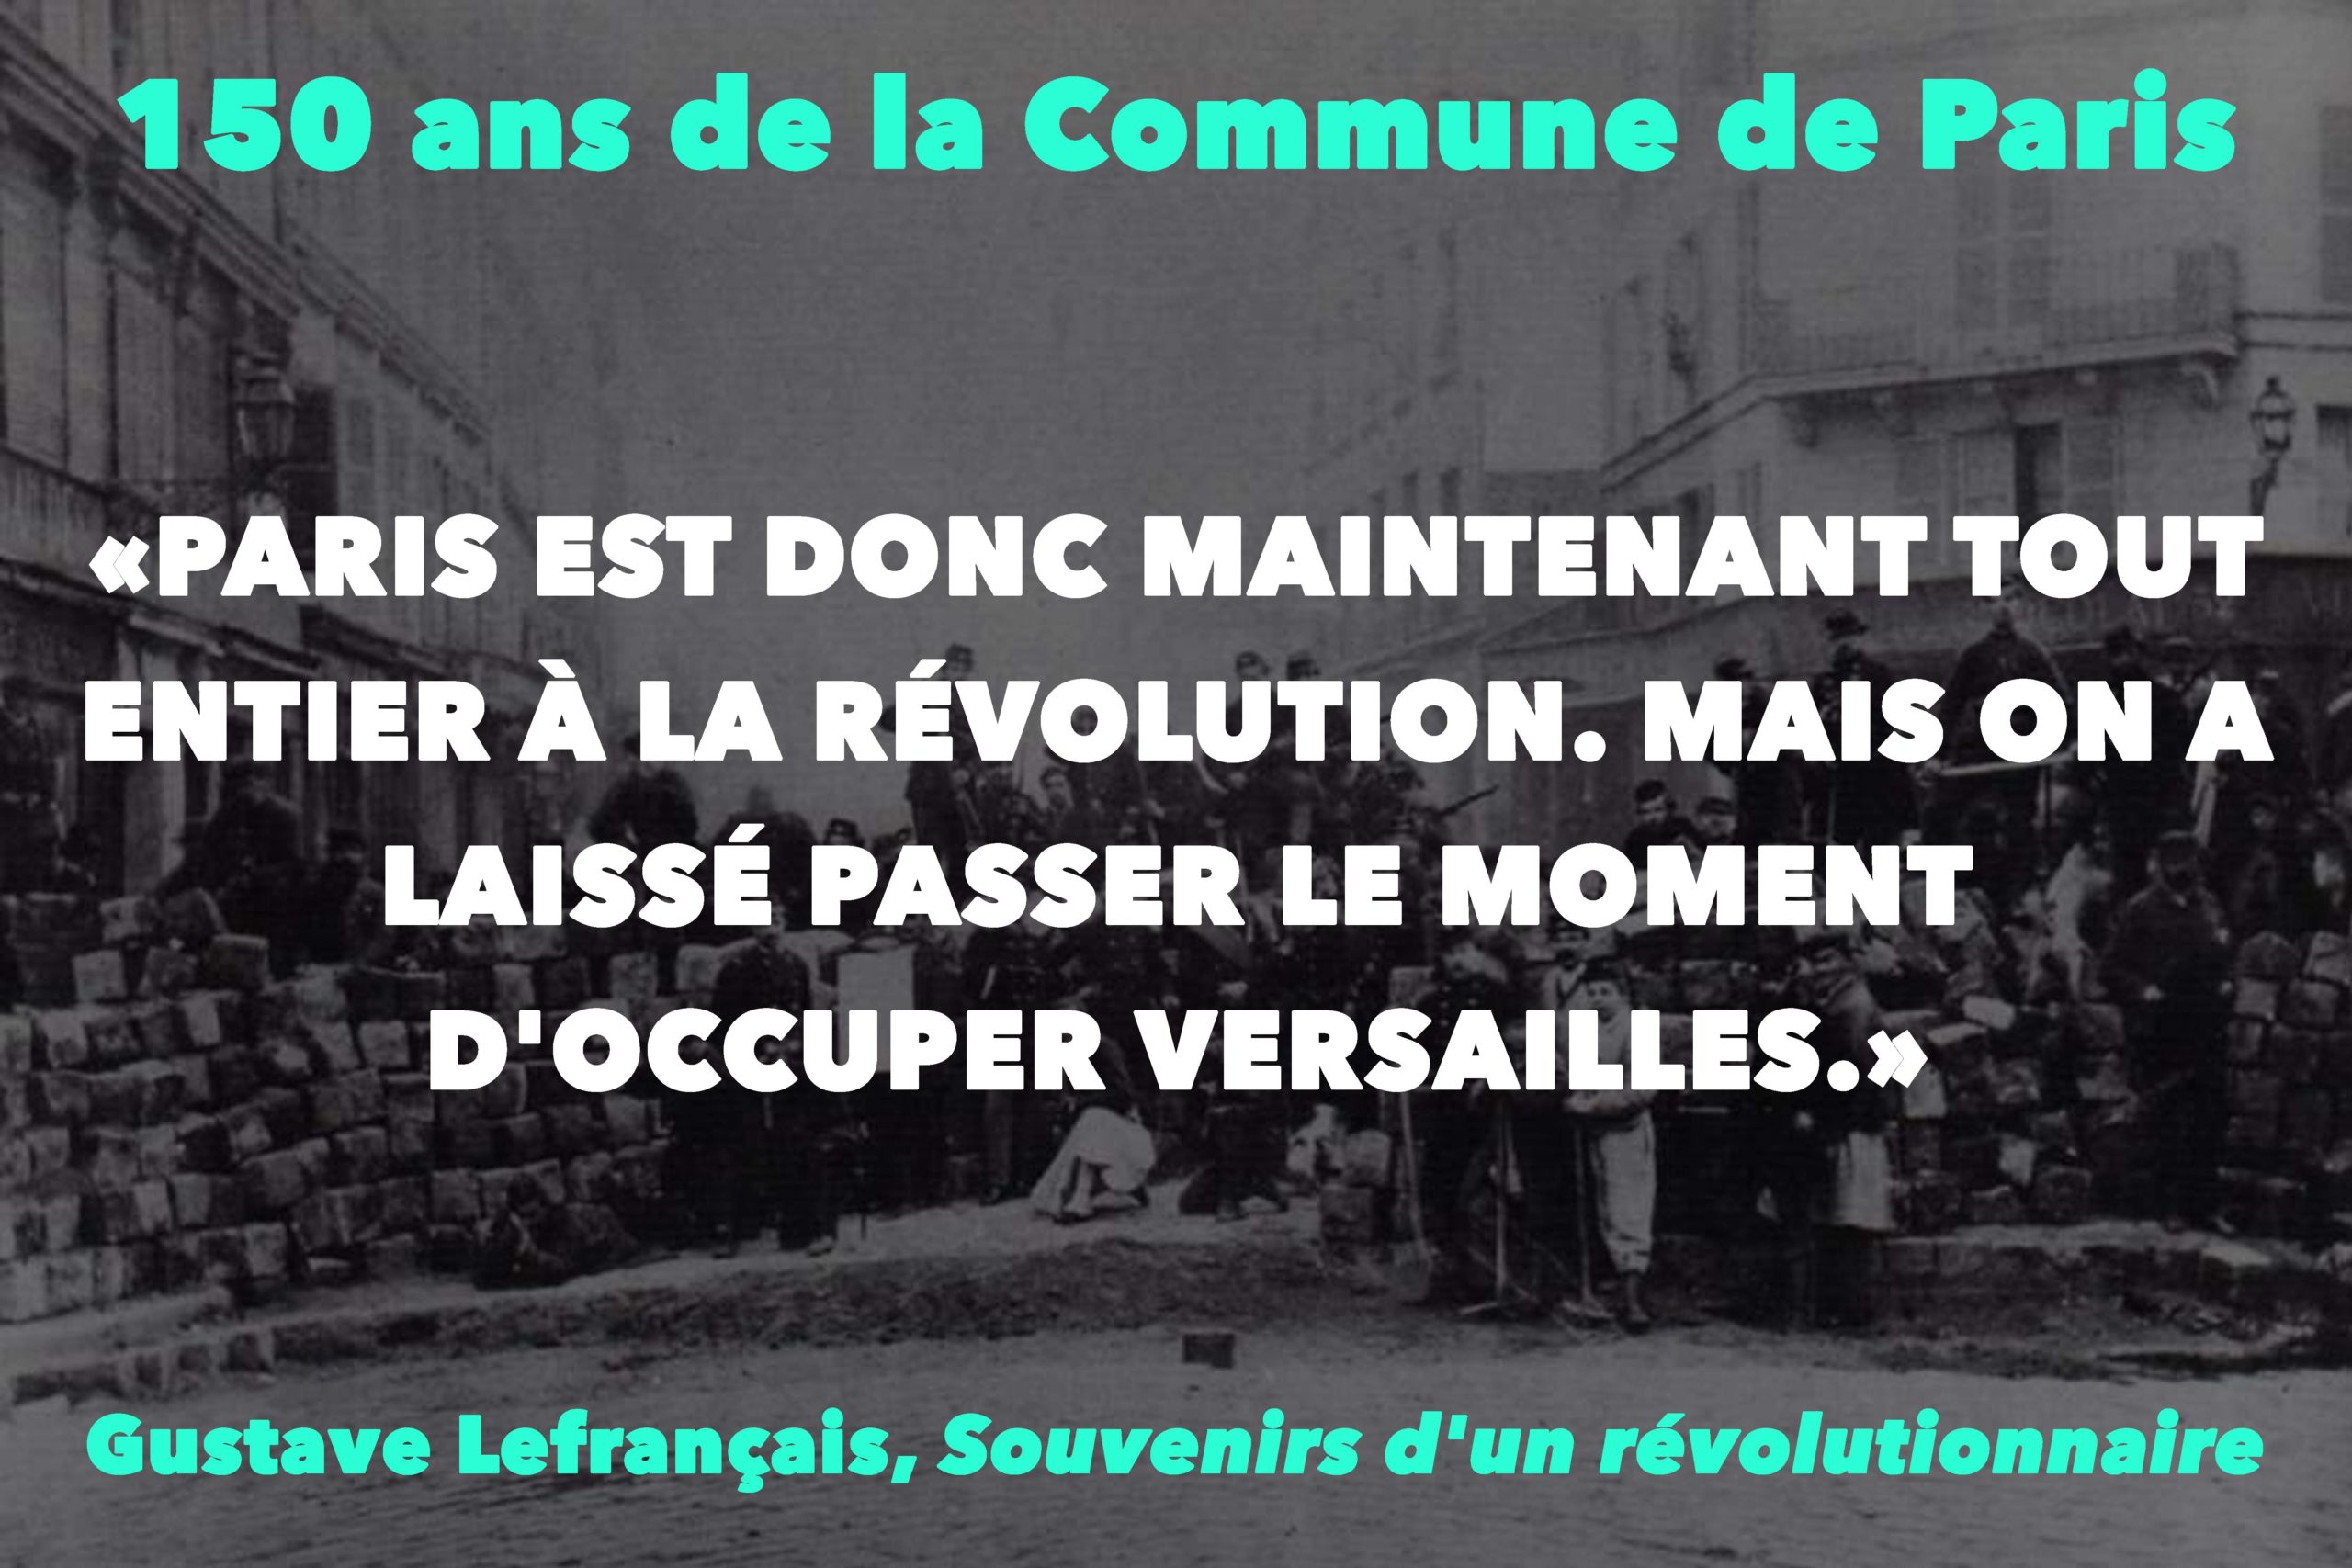 “PARIS EST DONC MAINTENANT TOUT ENTIER À LA RÉVOLUTION. MAIS ON A LAISSÉ PASSER LE MOMENT D’OCCUPER VERSAILLES.”